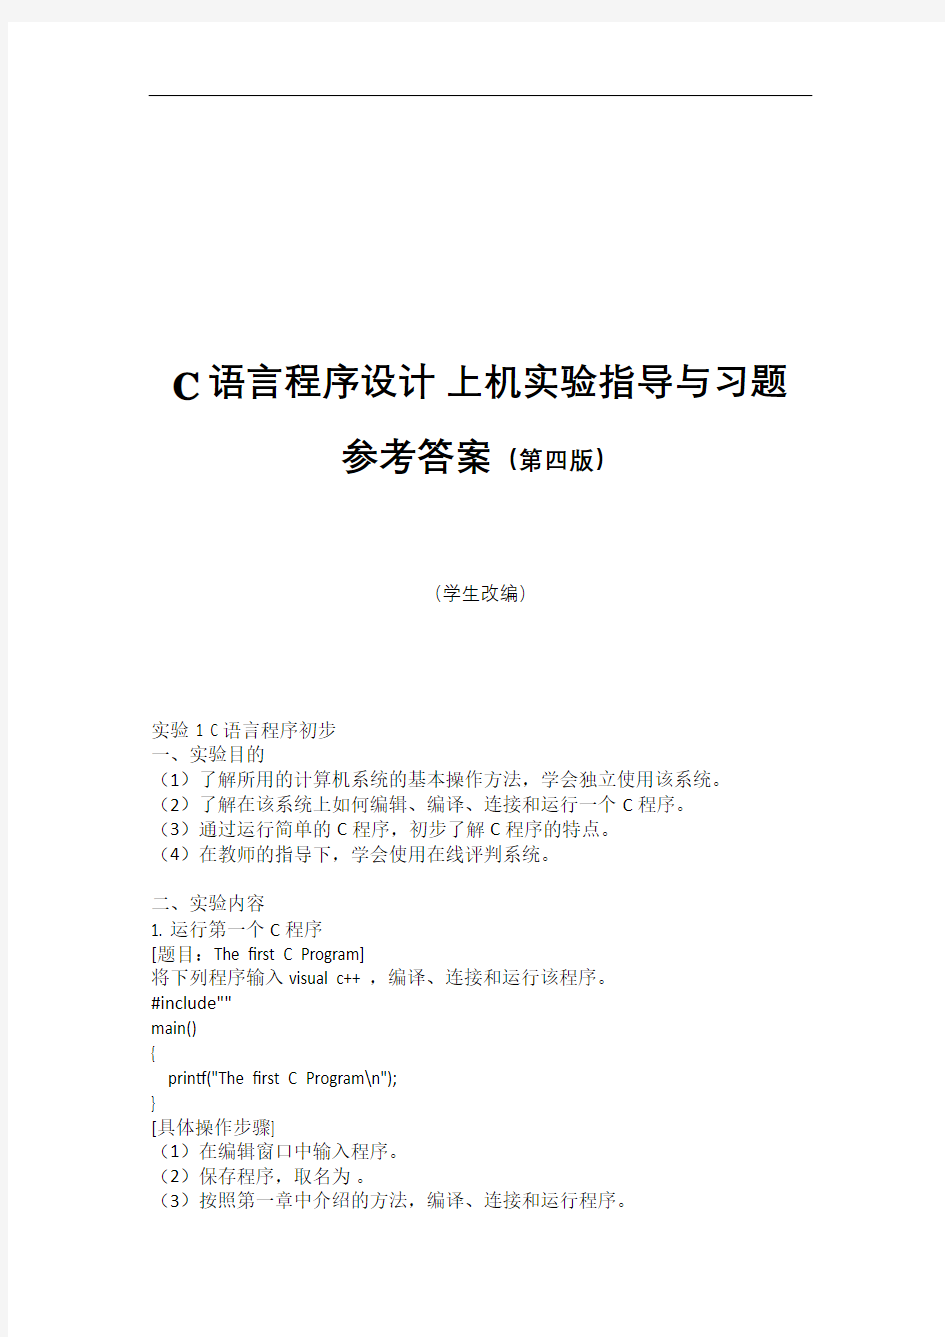 华南农业大学C语言实验上机实验第四版参考答案